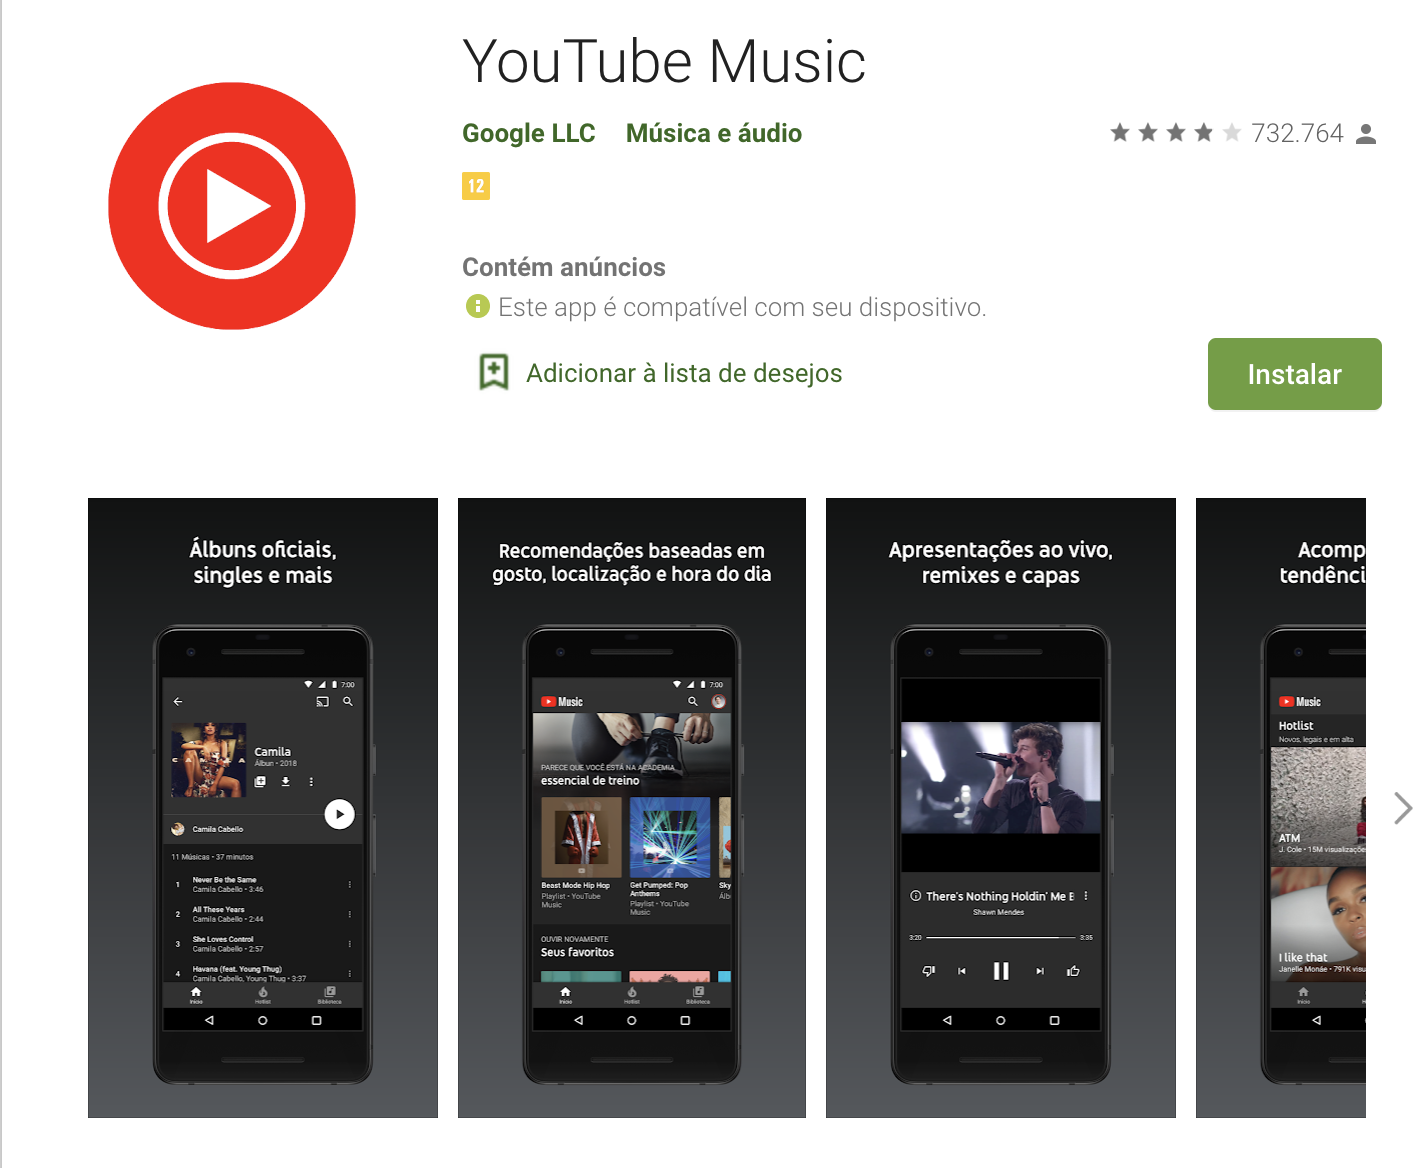 Youtube Music como exemplo de plataforma digitais para música